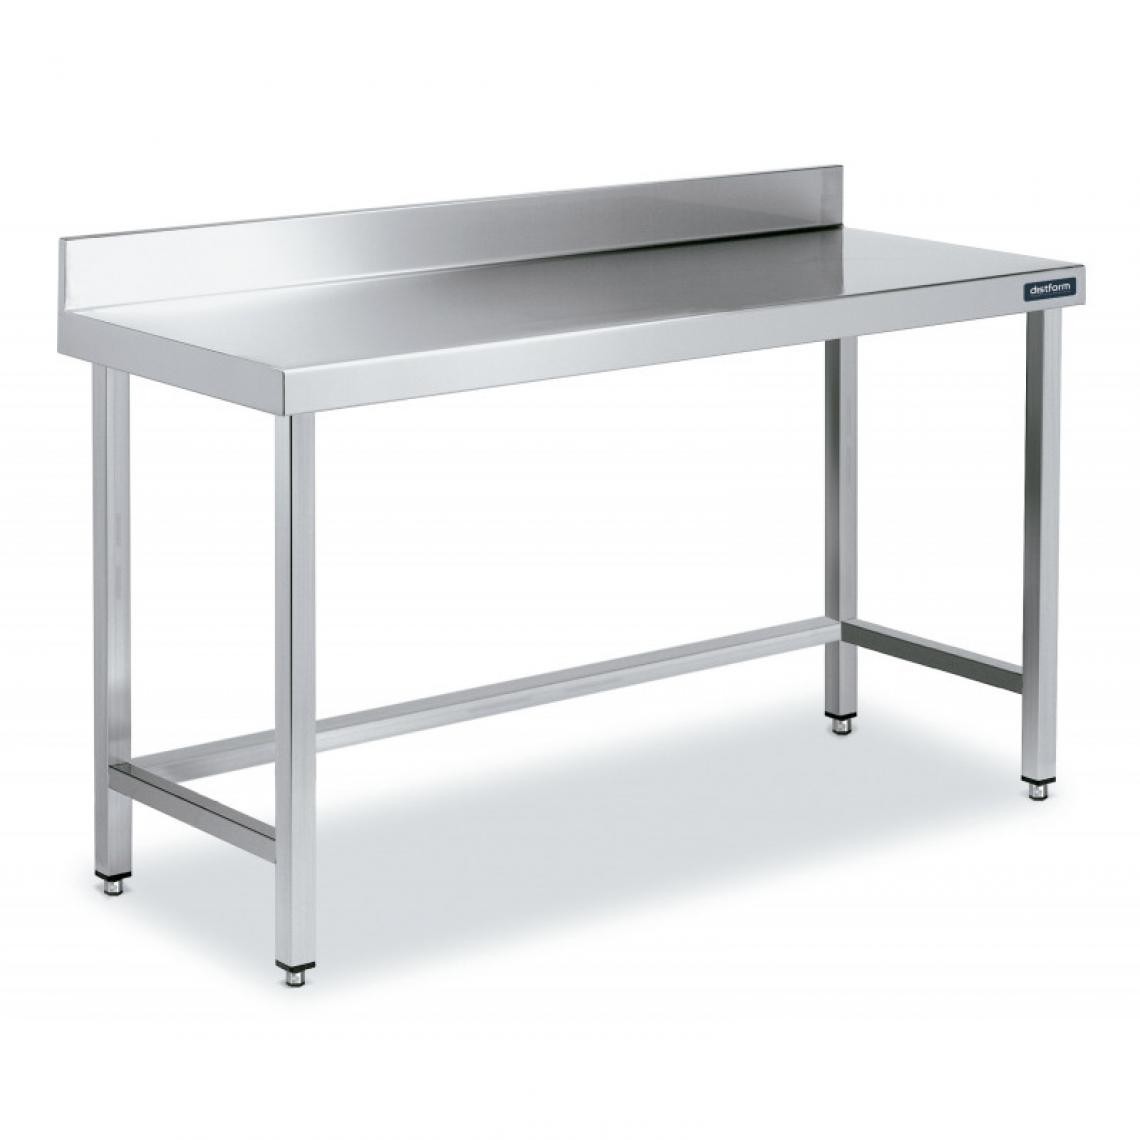 DISTFORM - Table Inox de Travail avec Dosseret Gamme 800 - Distform - Acier inoxydable1600x800 - Tables à manger